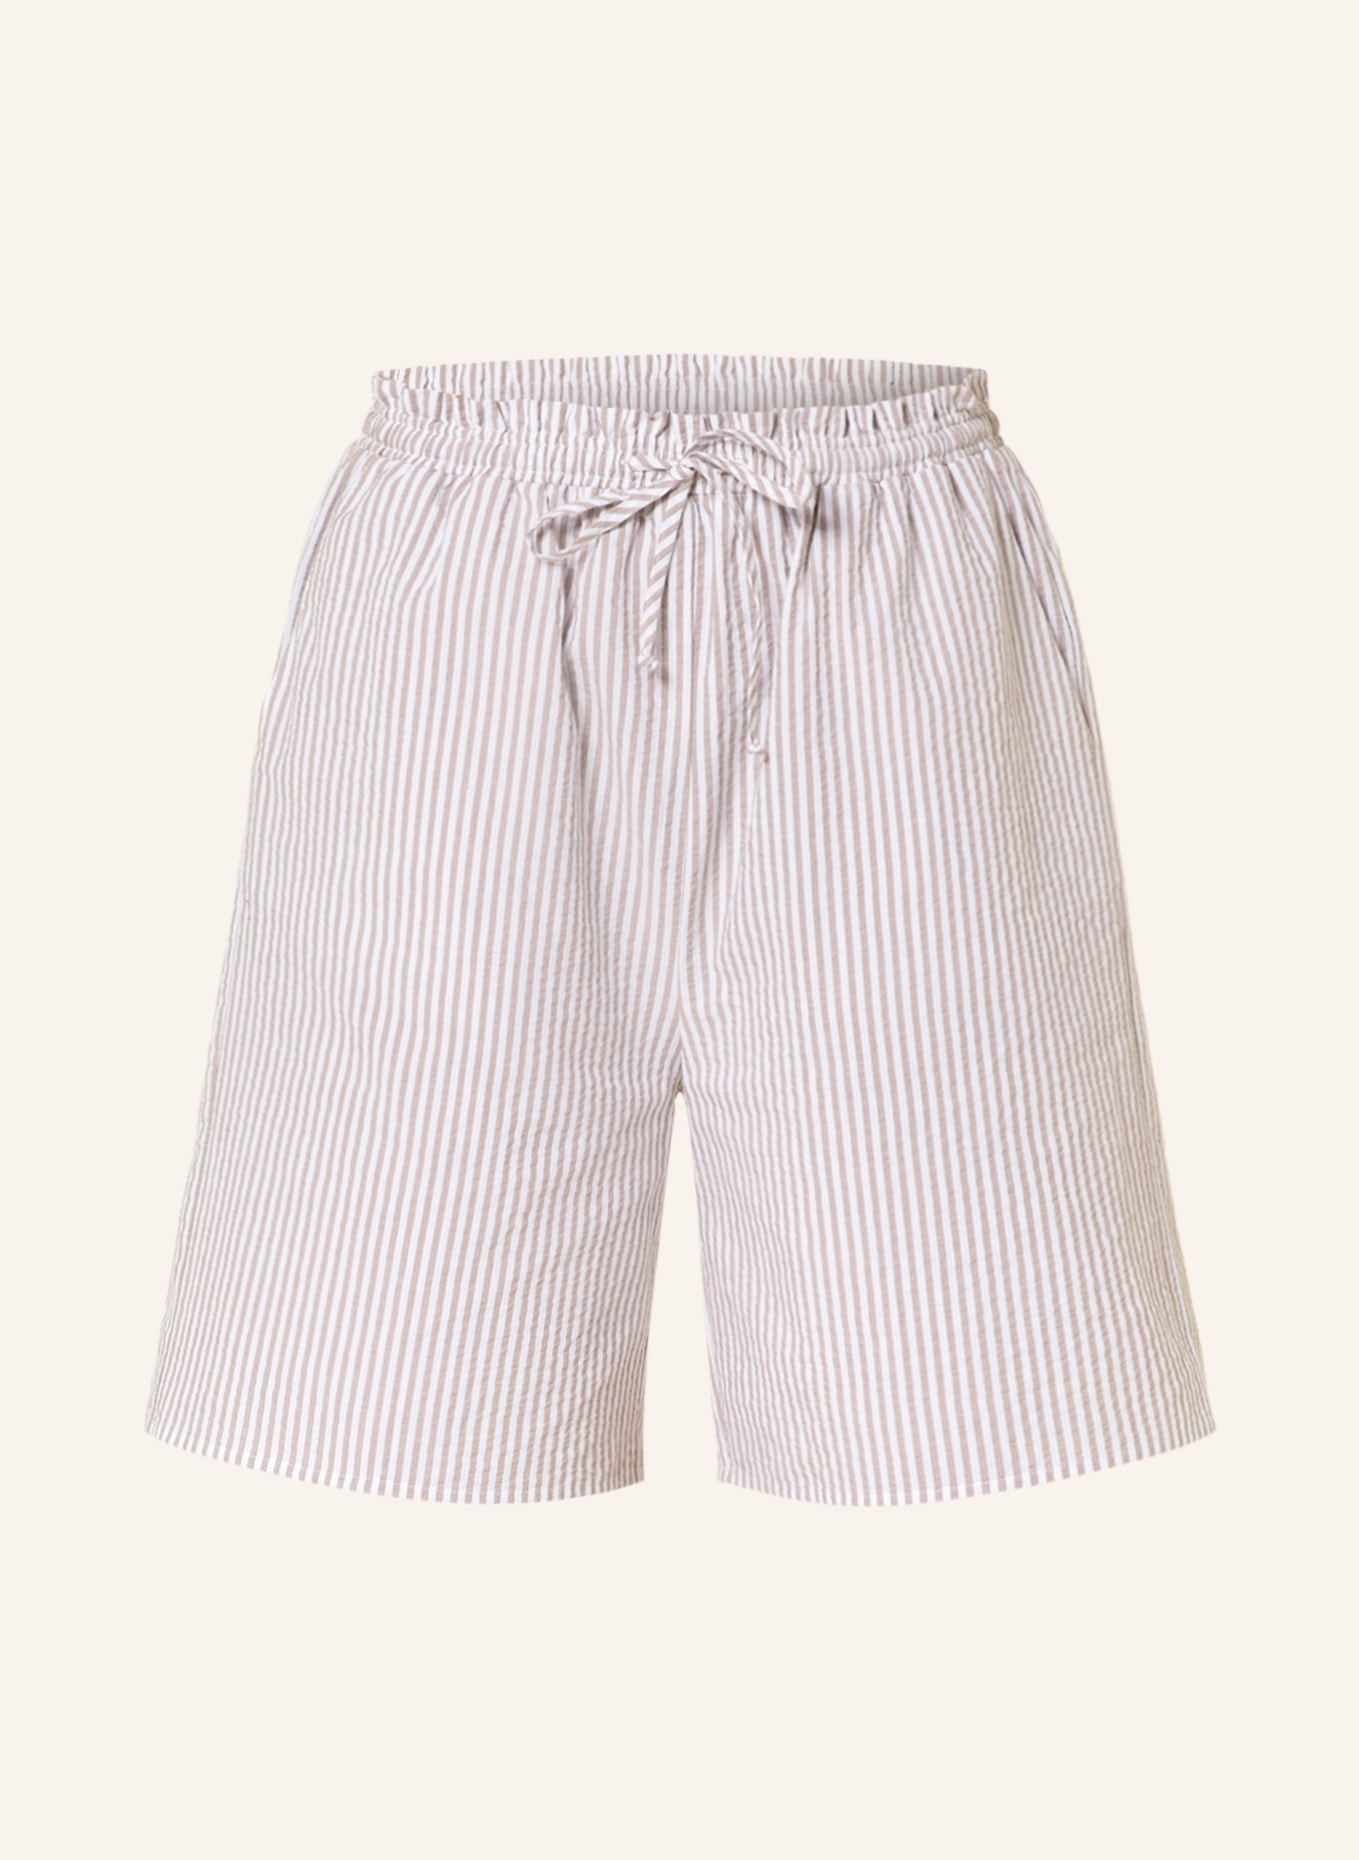 darling harbour Pajama shorts, Color: BEIGE/ ECRU (Image 1)